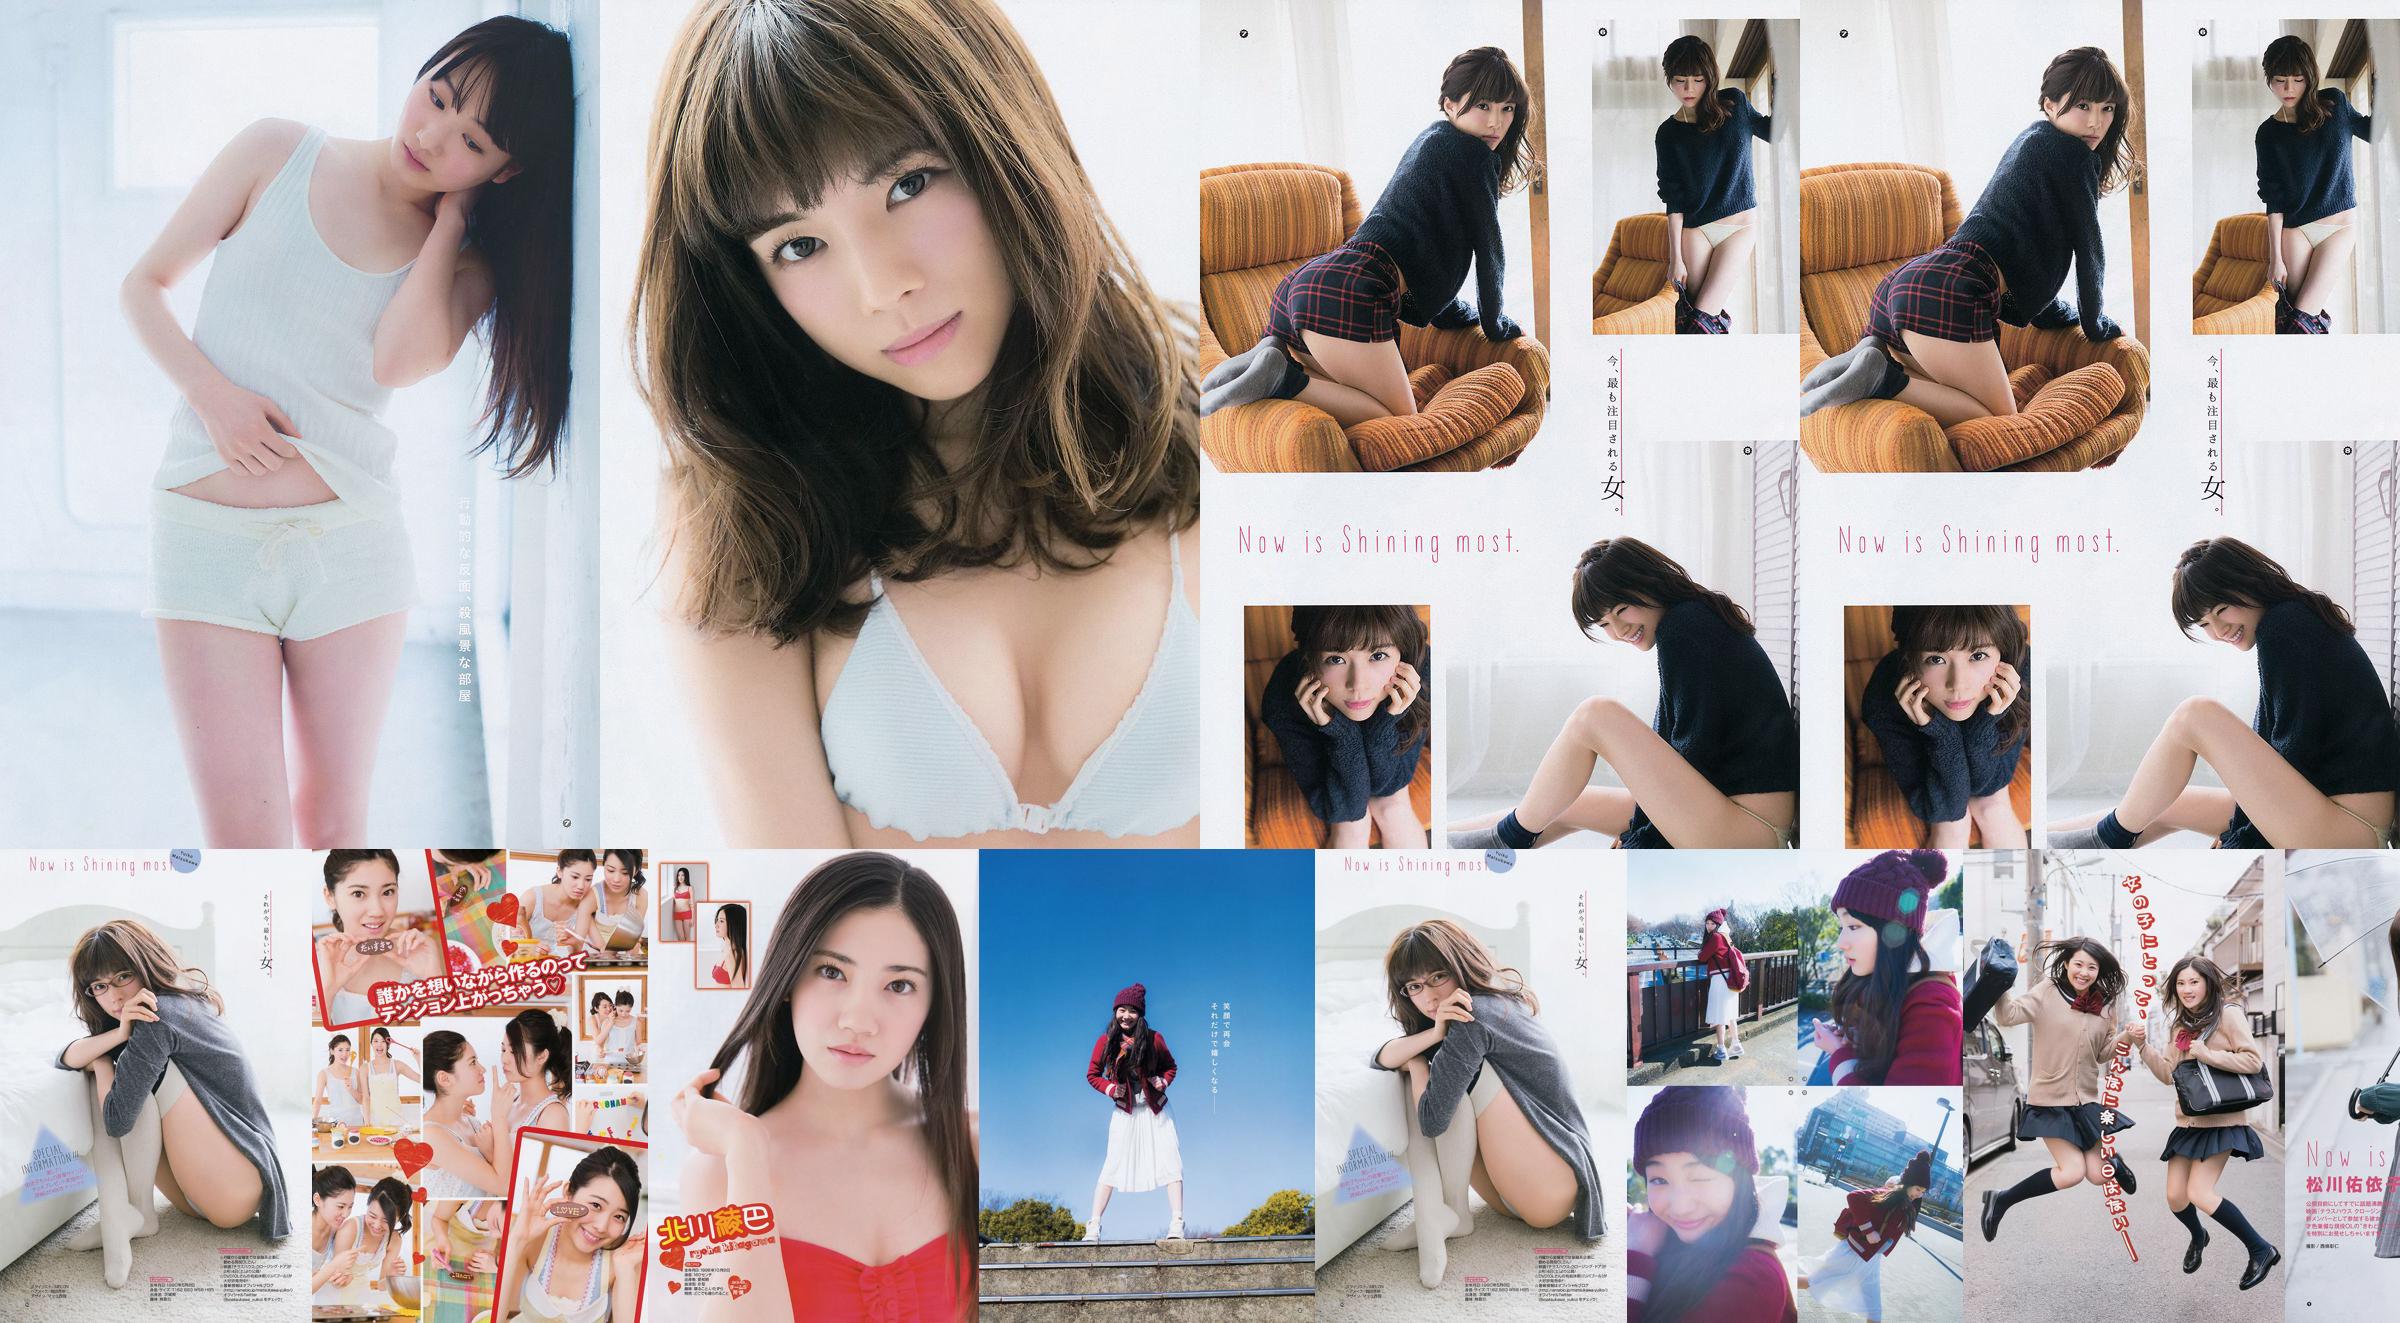 [Young Gangan] Ryoha Kitagawa Ami Miyamae Yuiko Matsukawa Narumi Akizuki 2015 No.04 Fotografía No.8467a5 Página 1